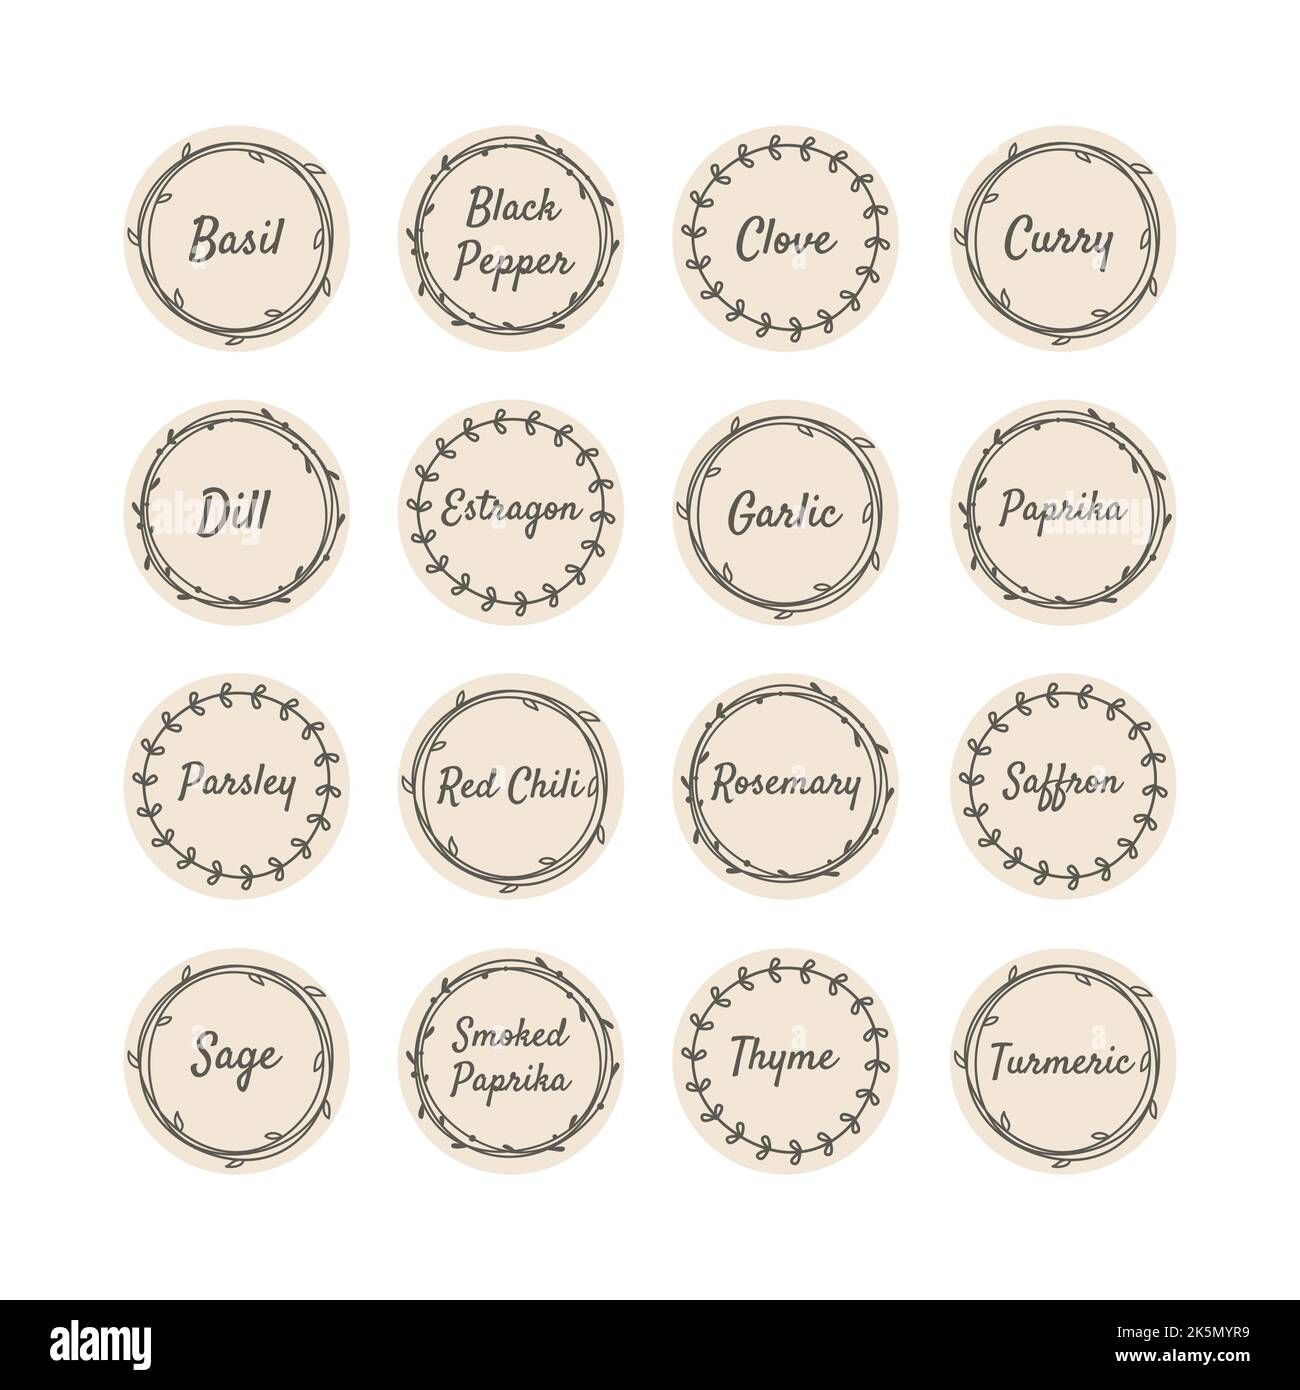 Vektor-Label-Set für Gewürze und Kräuter für Küchenbecher. Vintage-Sticker mit Gewürzellipse und Blumenkranz. Stock Vektor